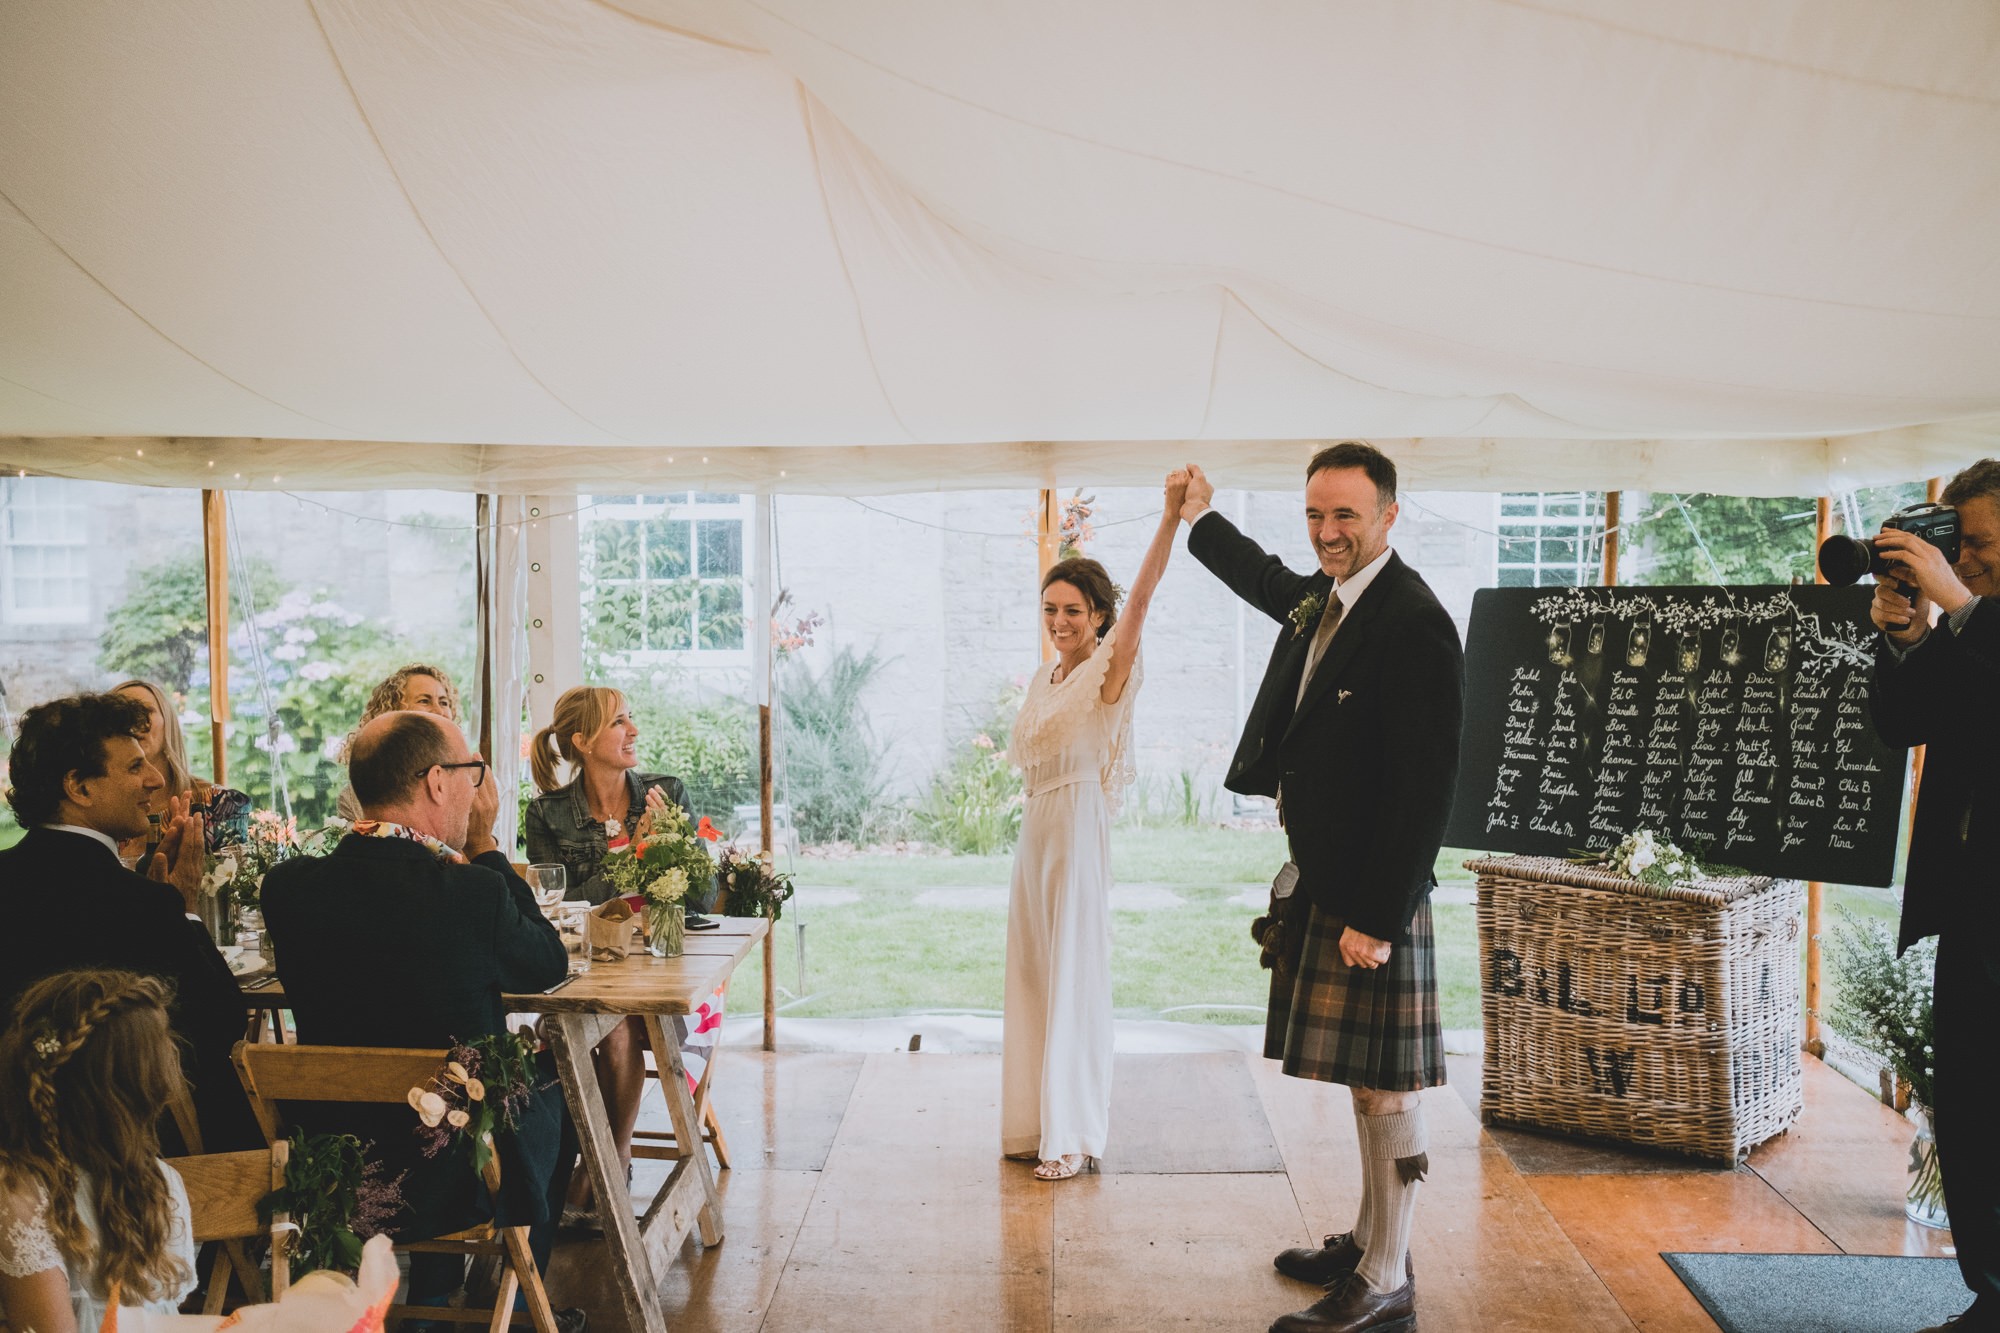 Scottish Wedding Photography